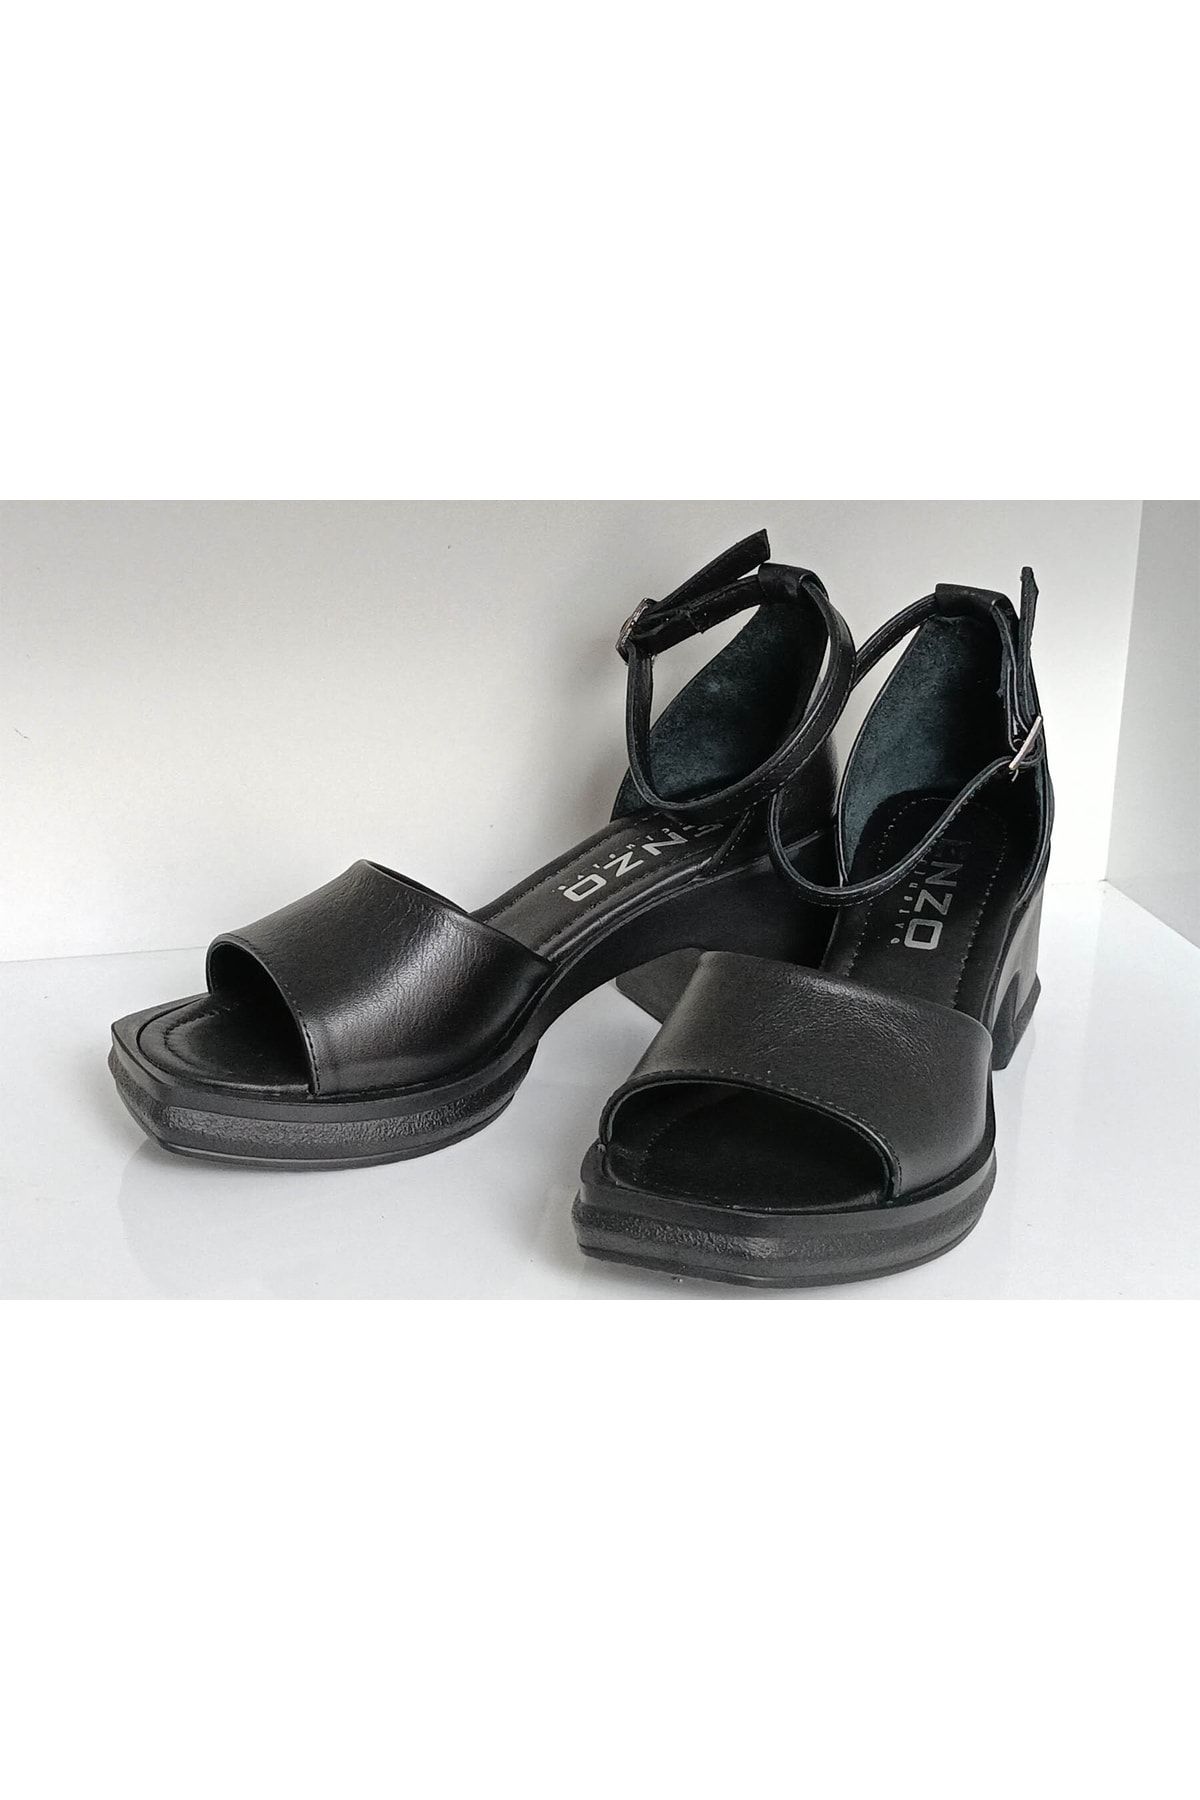 ENZO Kalite Toptan Siyah Hakiki Deri Sandalet Ayakkabı